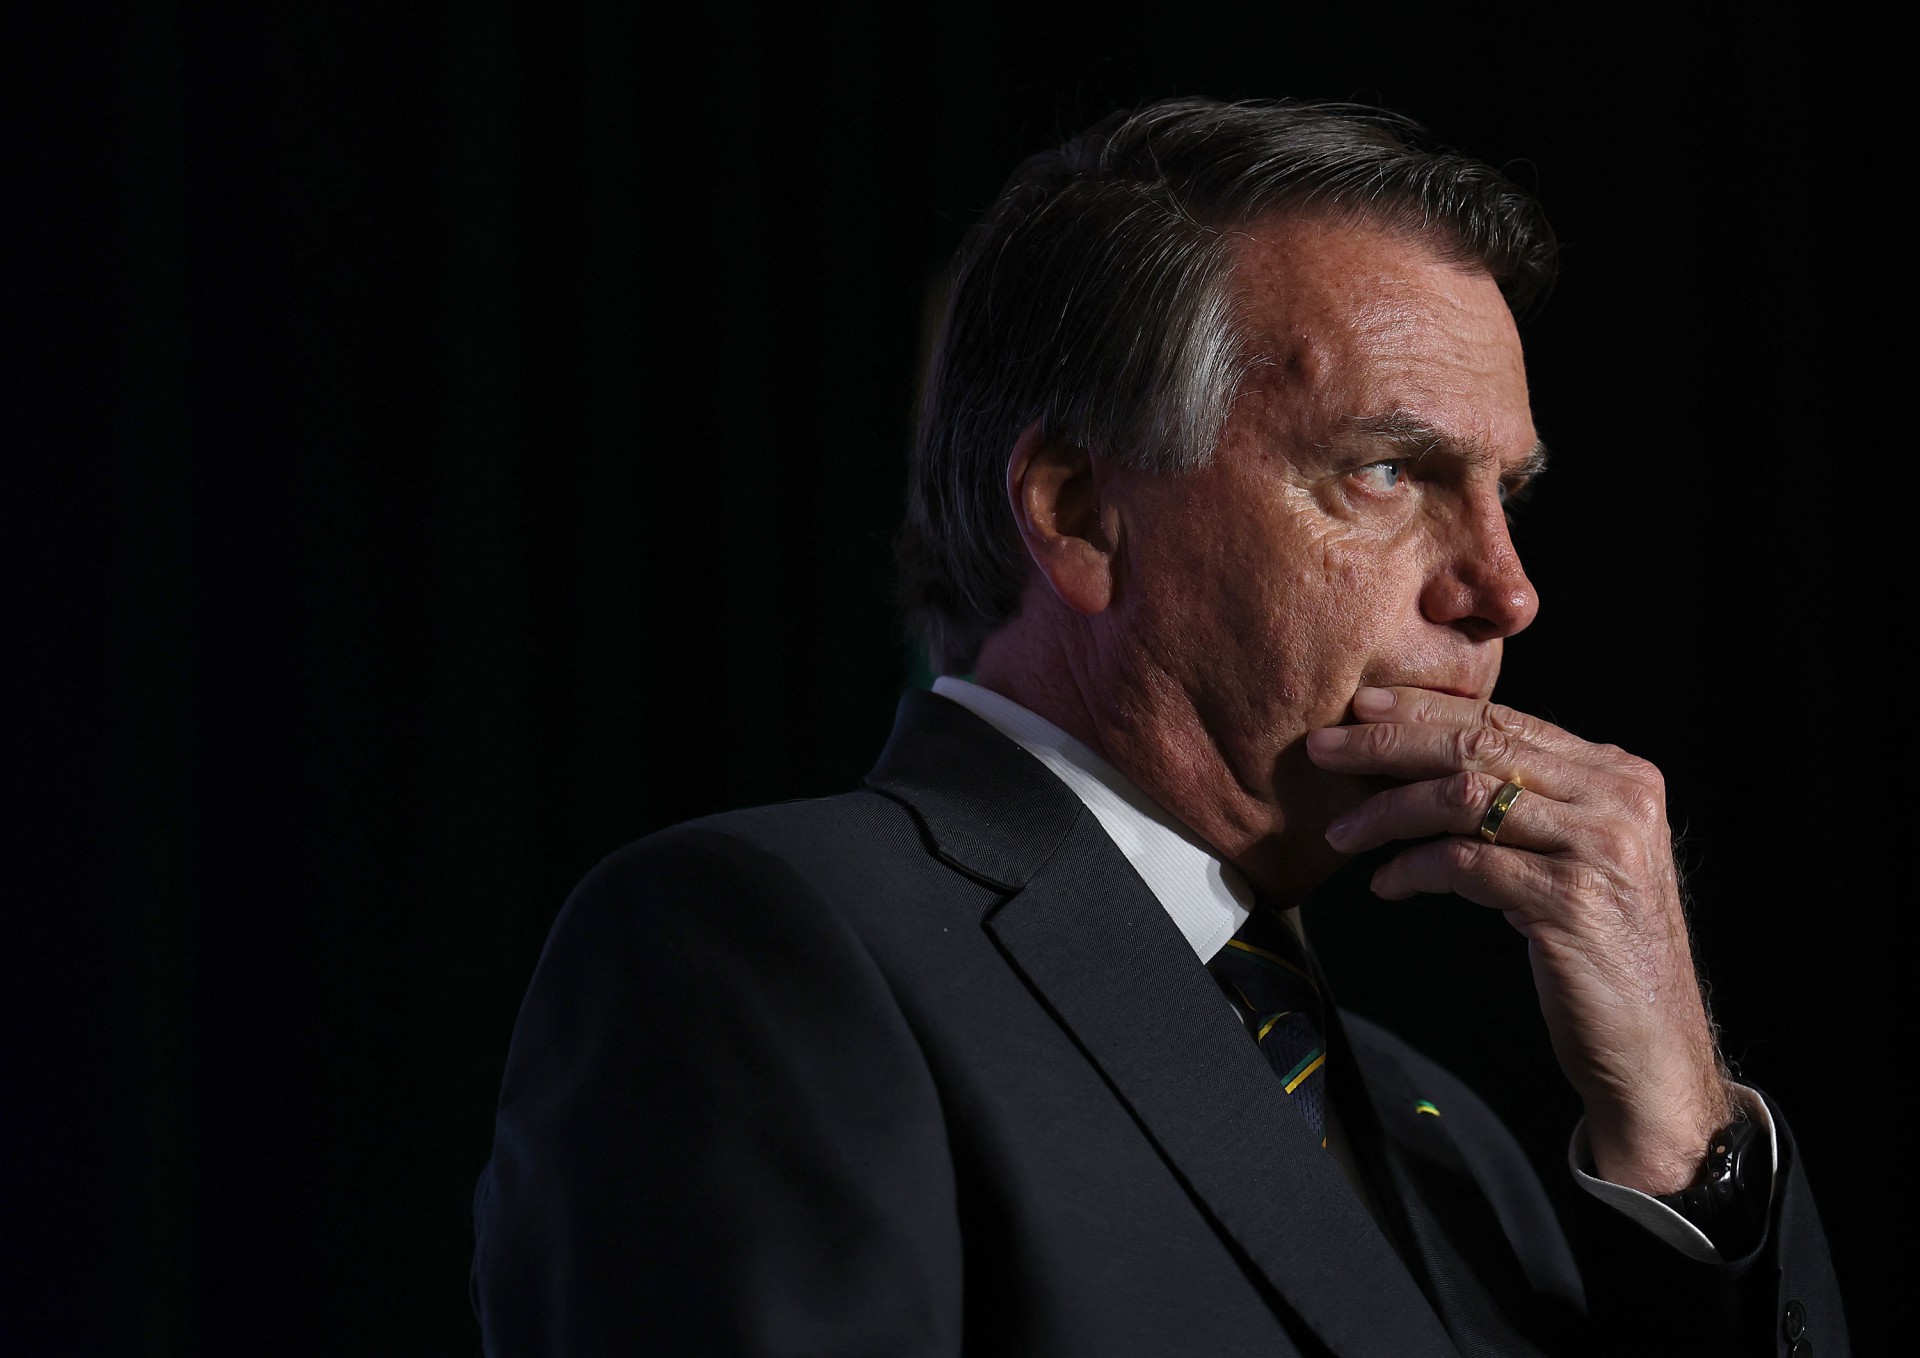  Bolsonaro foi condenado por abuso de poder político e uso indevido dos meios de comunicação (Foto: JOE RAEDLE / GETTY IMAGES NORTH AMERICA / AFP)